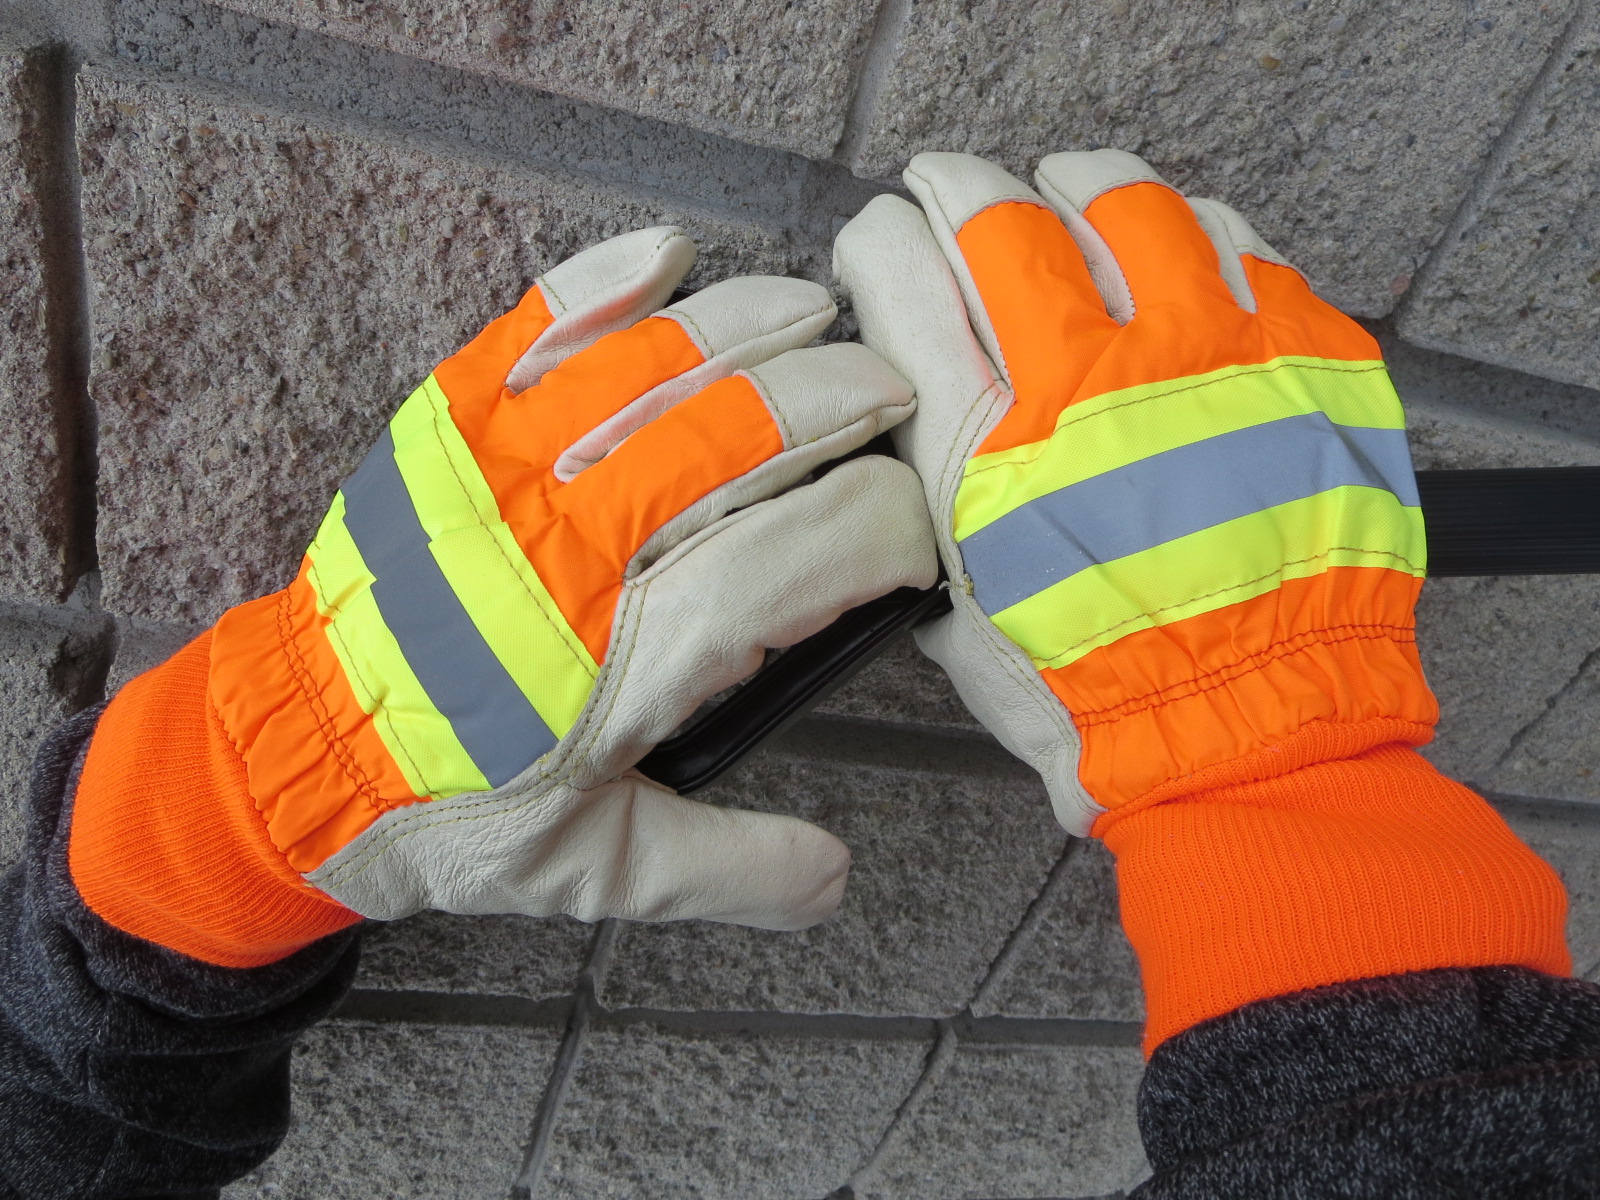  Hi-Viz Leather Reinforced Winter Work Gloves w/ Knit Cuffs